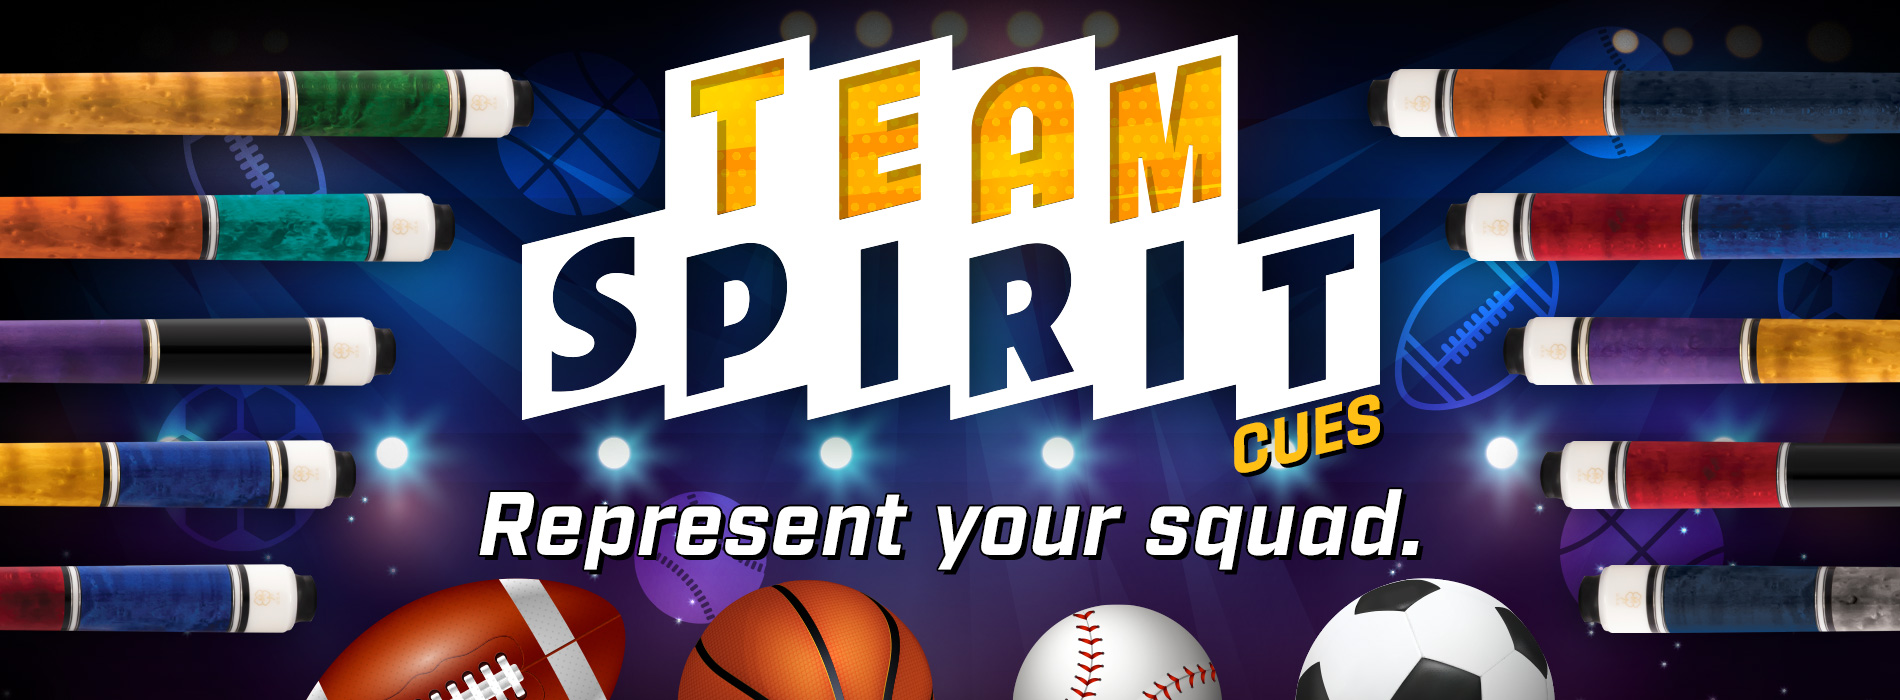 Team Spirit Cues